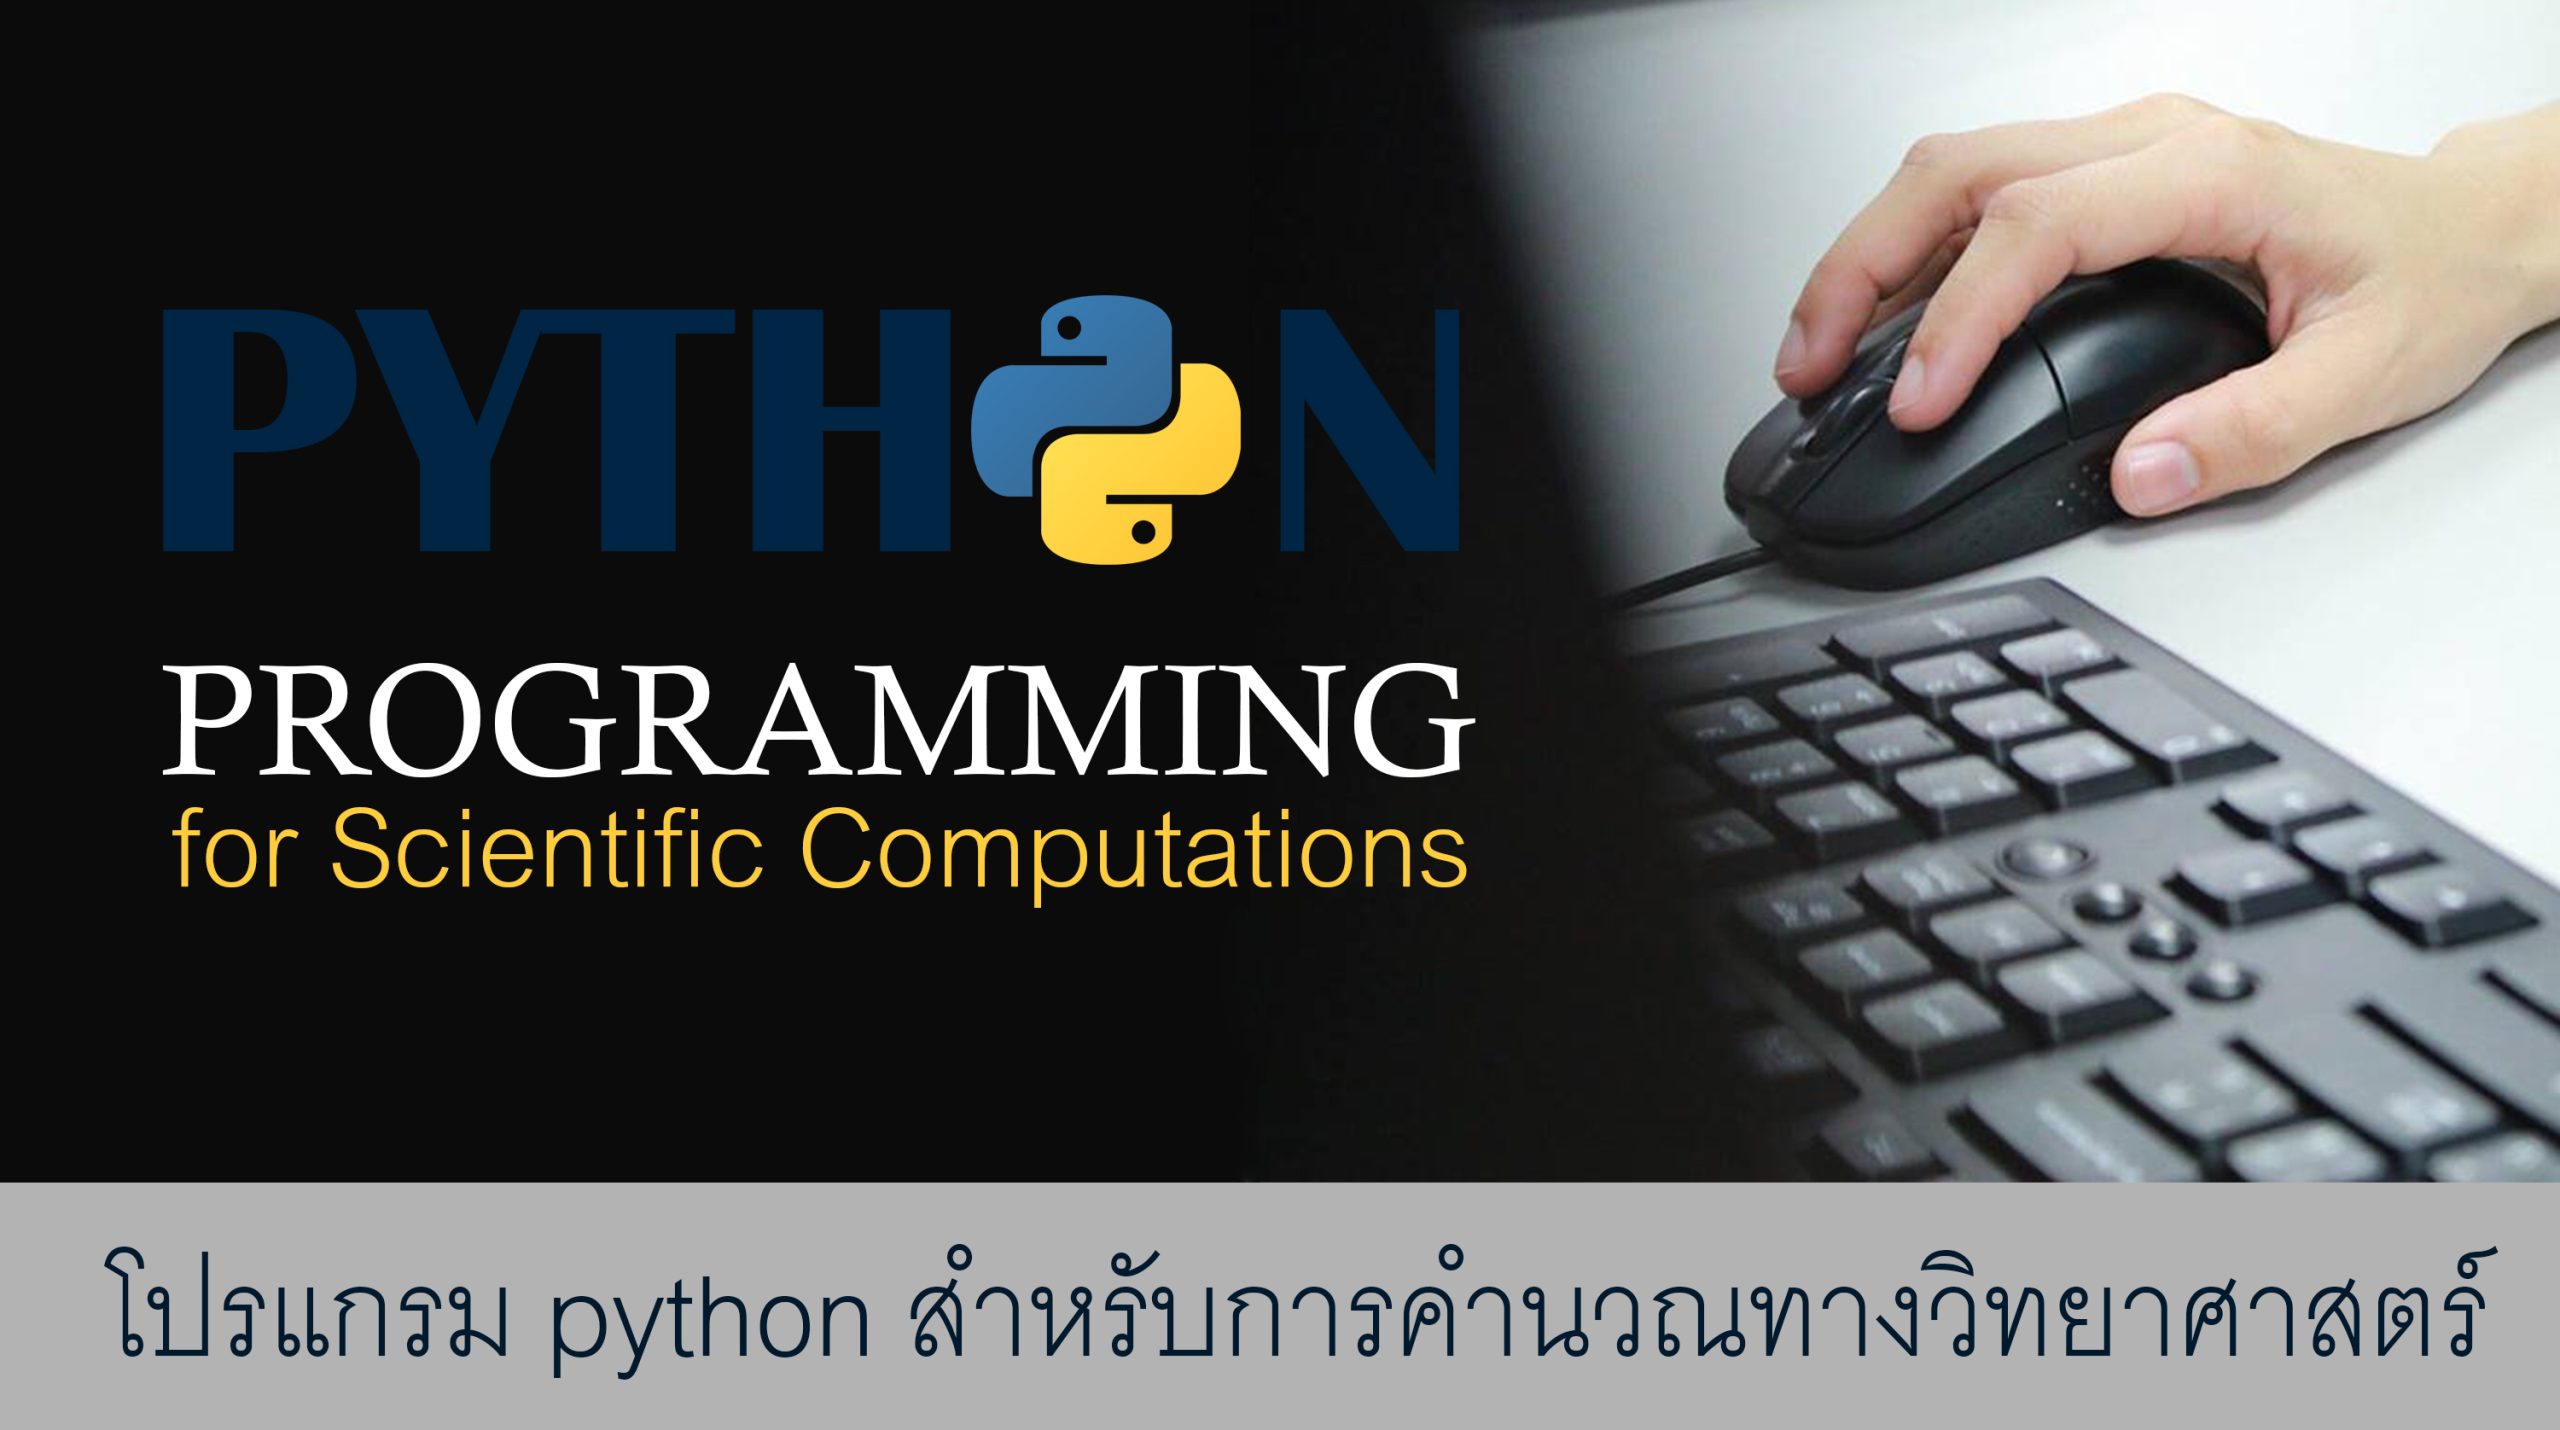 โปรแกรม Python สำหรับการคำนวณทางวิทยาศาสตร์ (Python Programming for Scientific Computations)